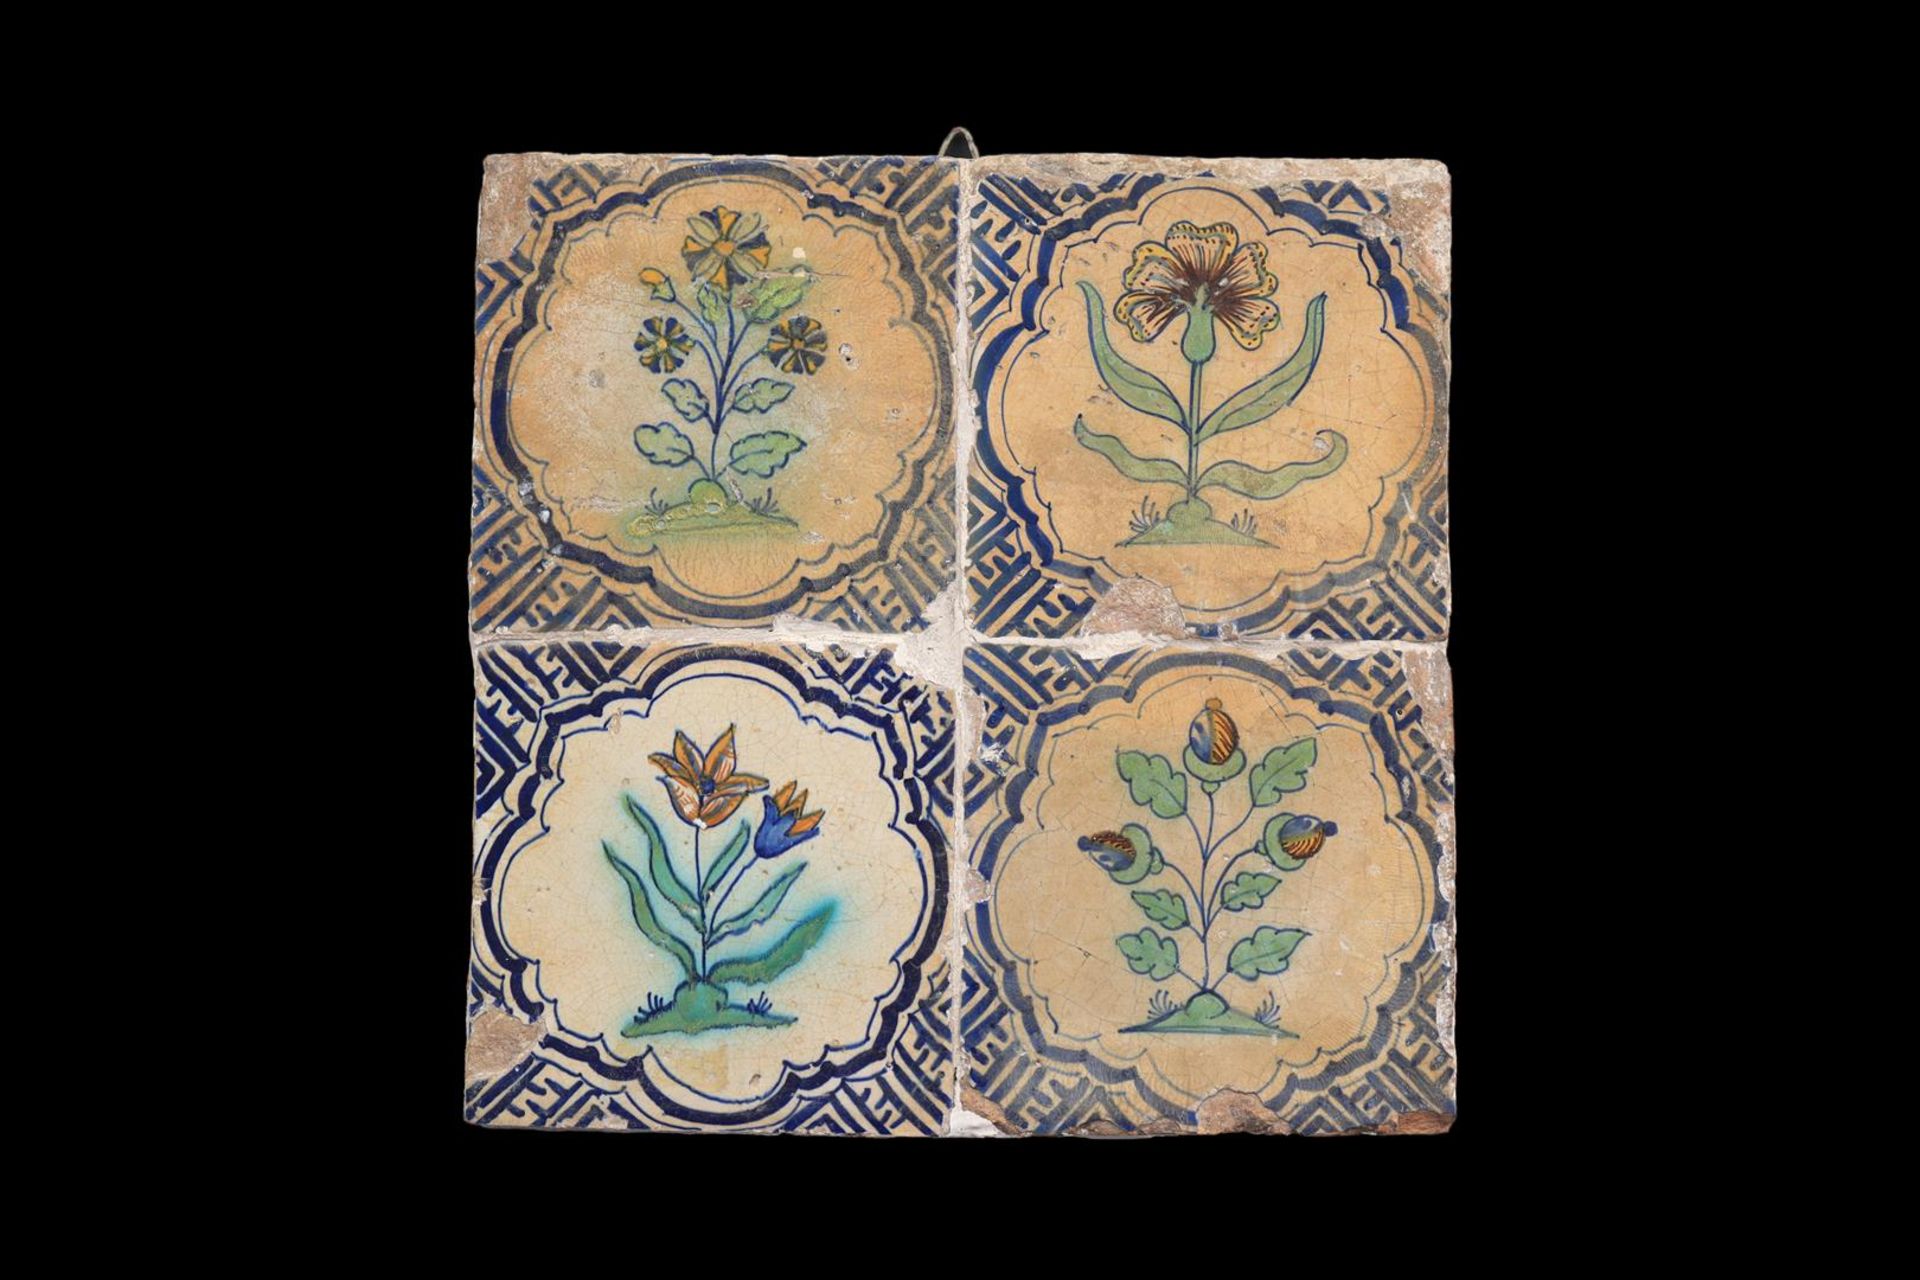 4 glazed earthenware tiles